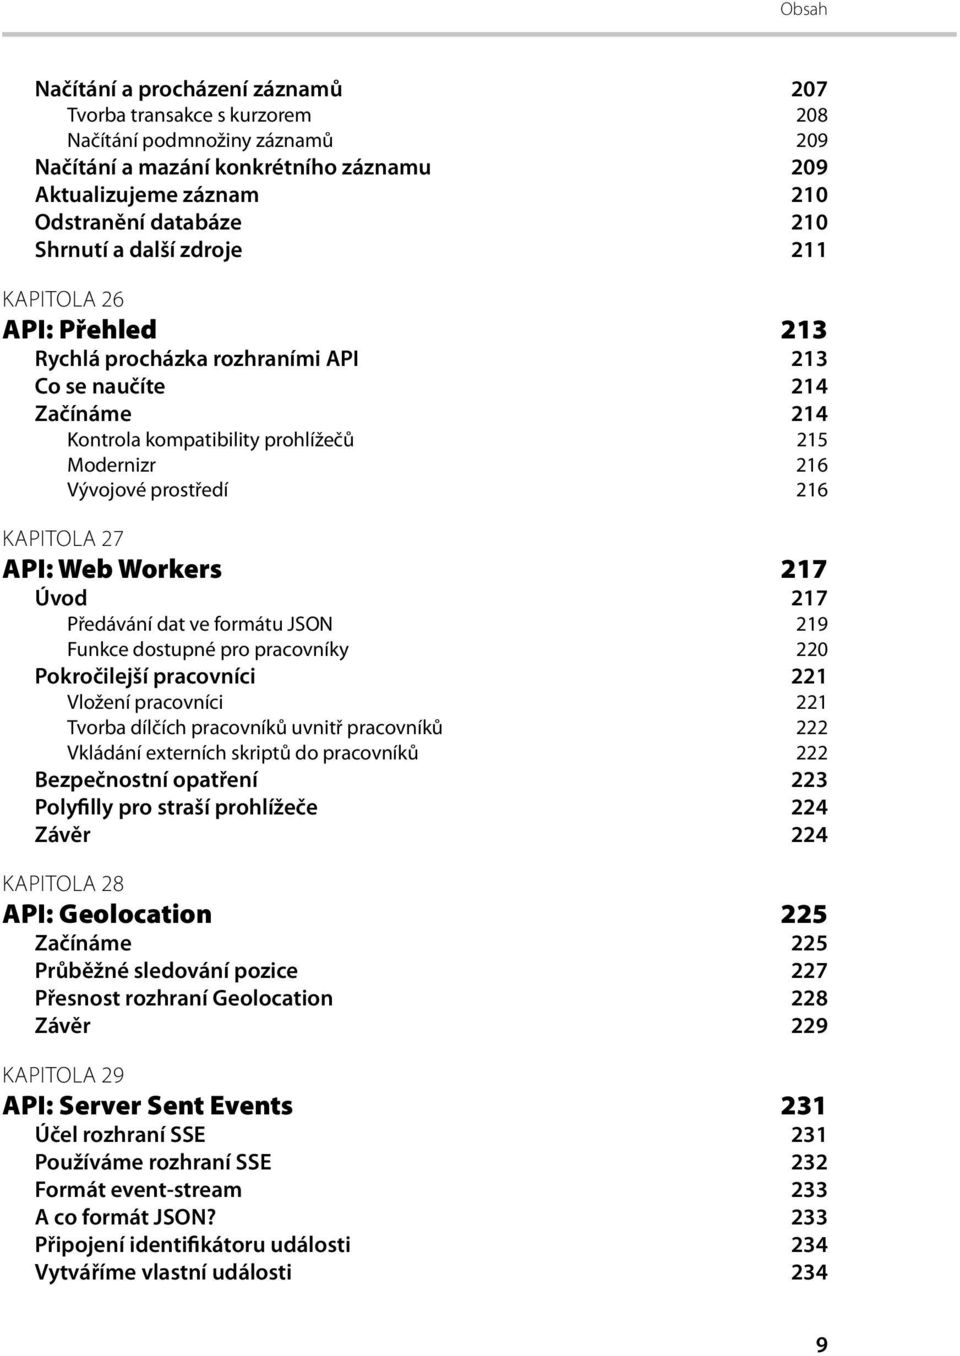 KAPITOLA 27 API: Web Workers 217 Úvod 217 Předávání dat ve formátu JSON 219 Funkce dostupné pro pracovníky 220 Pokročilejší pracovníci 221 Vložení pracovníci 221 Tvorba dílčích pracovníků uvnitř